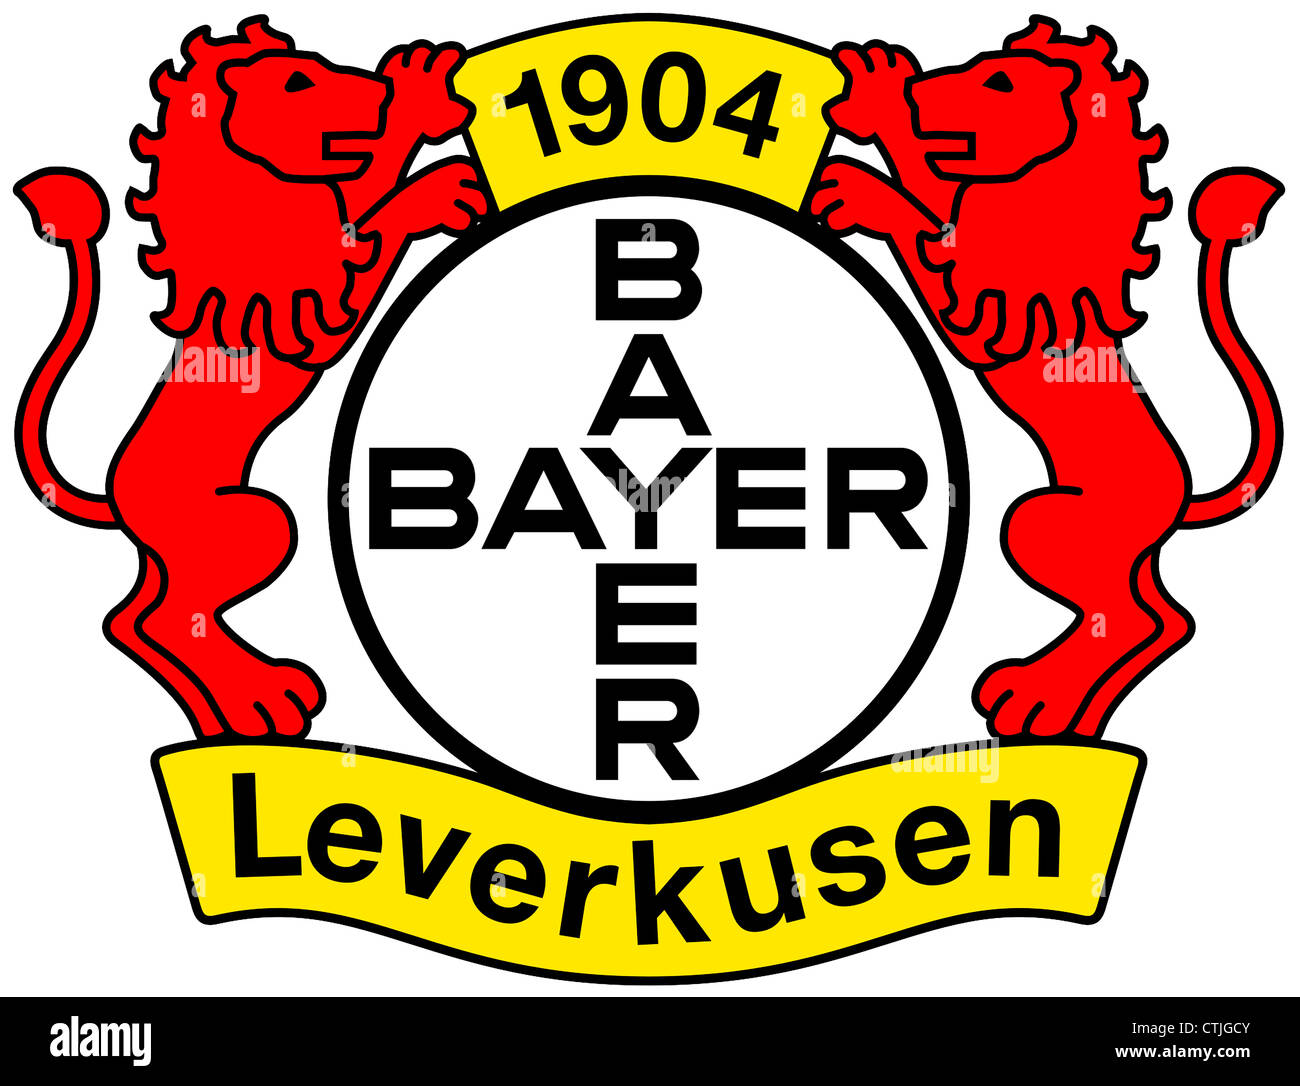 Logo des deutschen Fußball-Nationalmannschaft Bayer 04 Leverkusen. Stockfoto